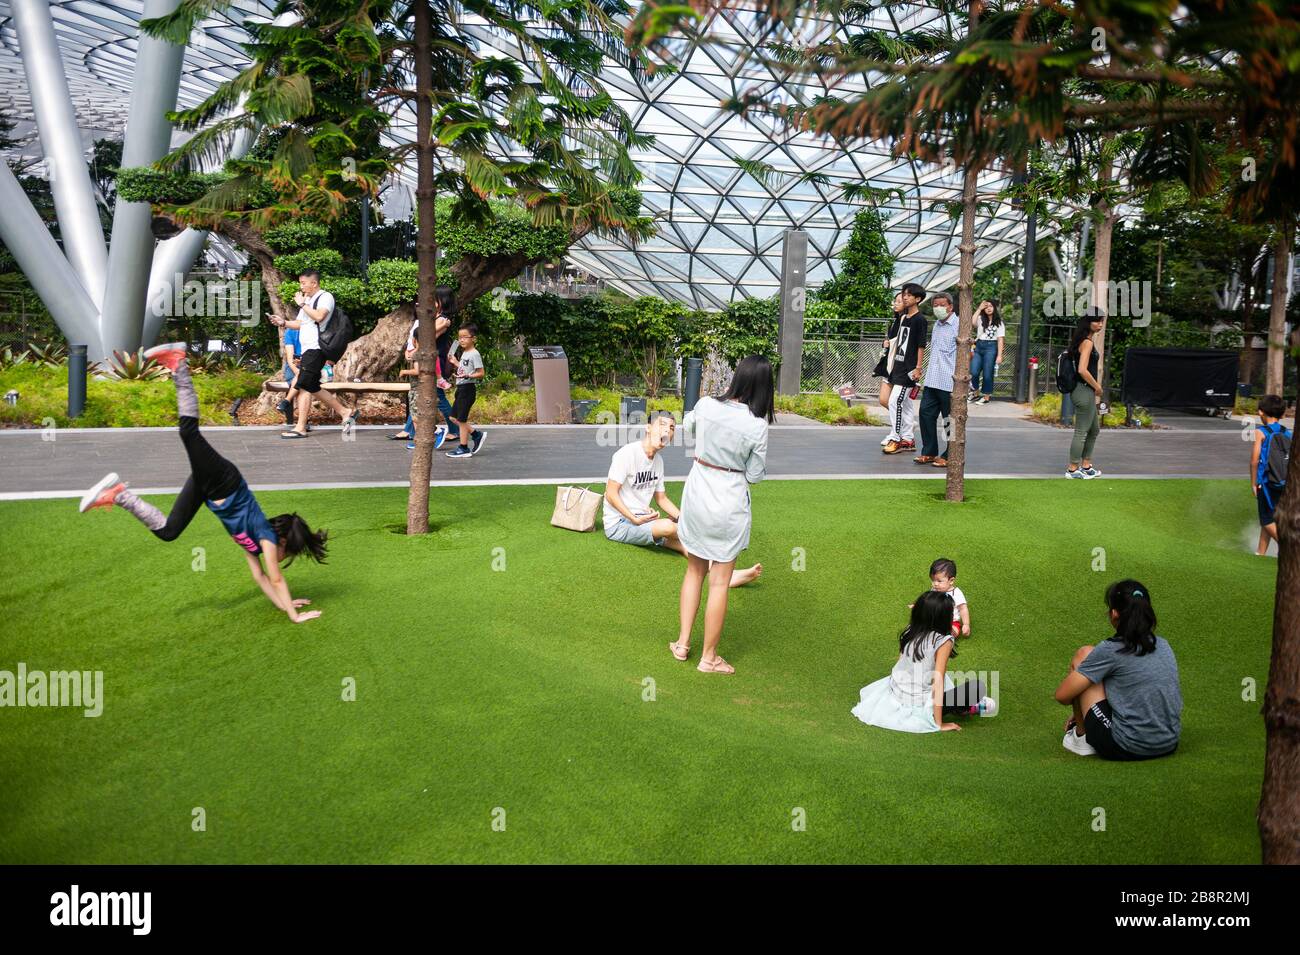 18.03.2020, Singapur, Republik Singapur, Asien - Kinder spielen auf Kunstrasen in Foggy Bowls im neuen Jewel Terminal am Flughafen Changi. Stockfoto